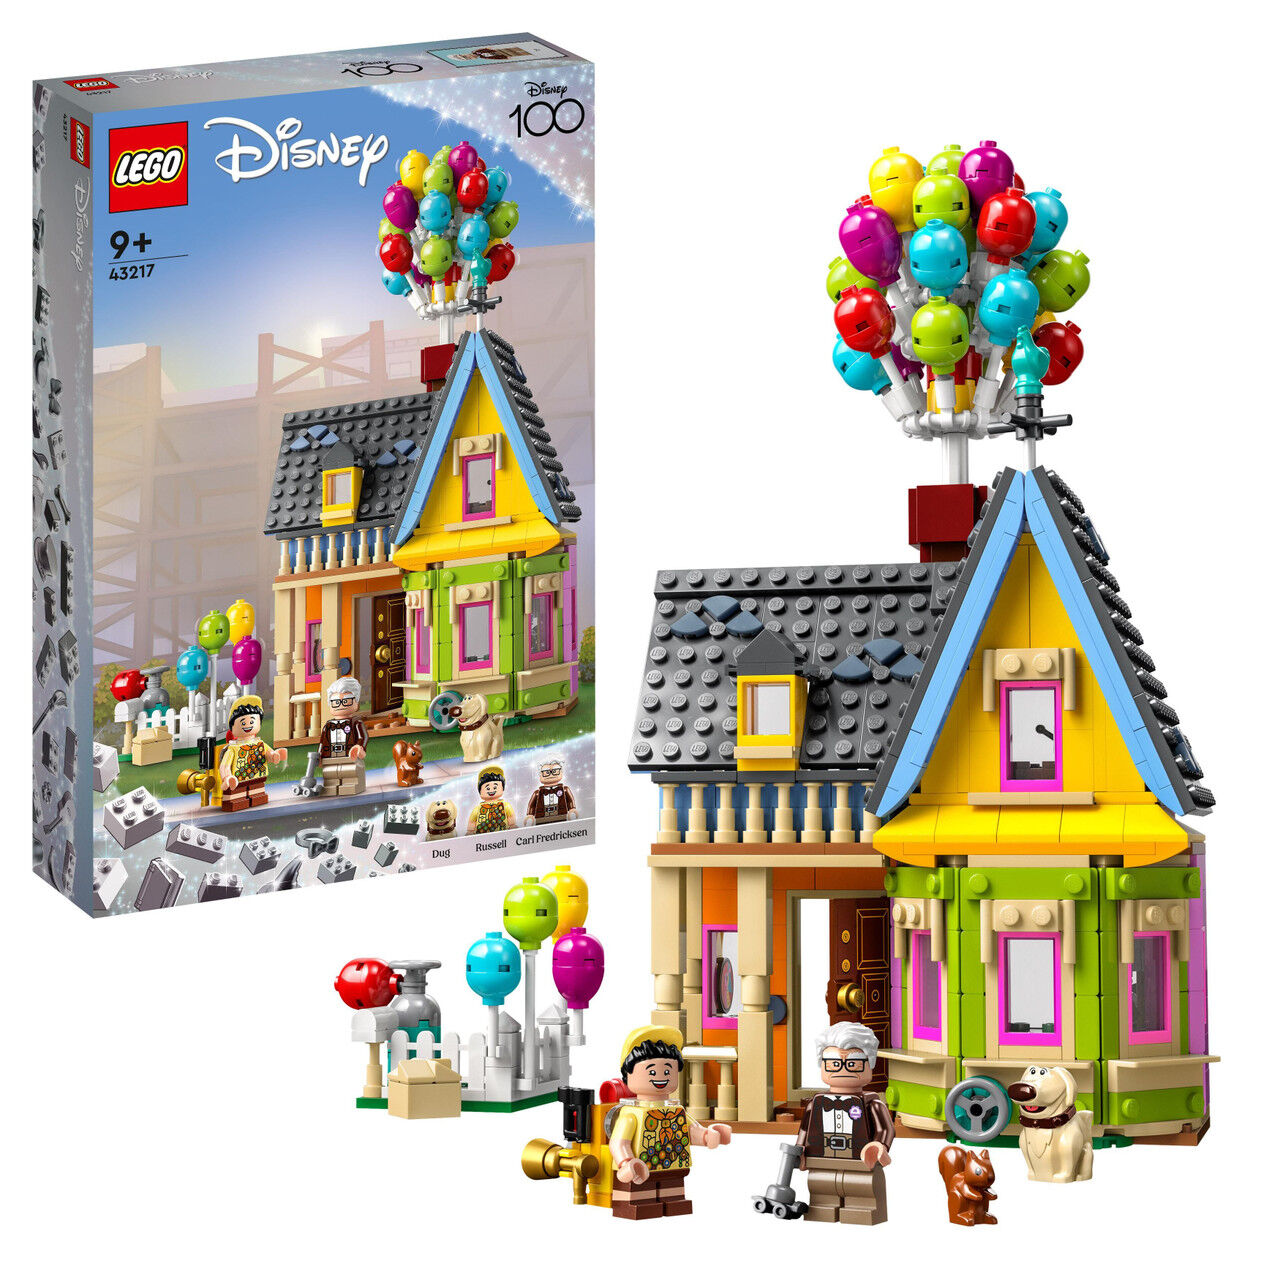 Lego Pixar ‘Up' House Model Building Set​ 43217